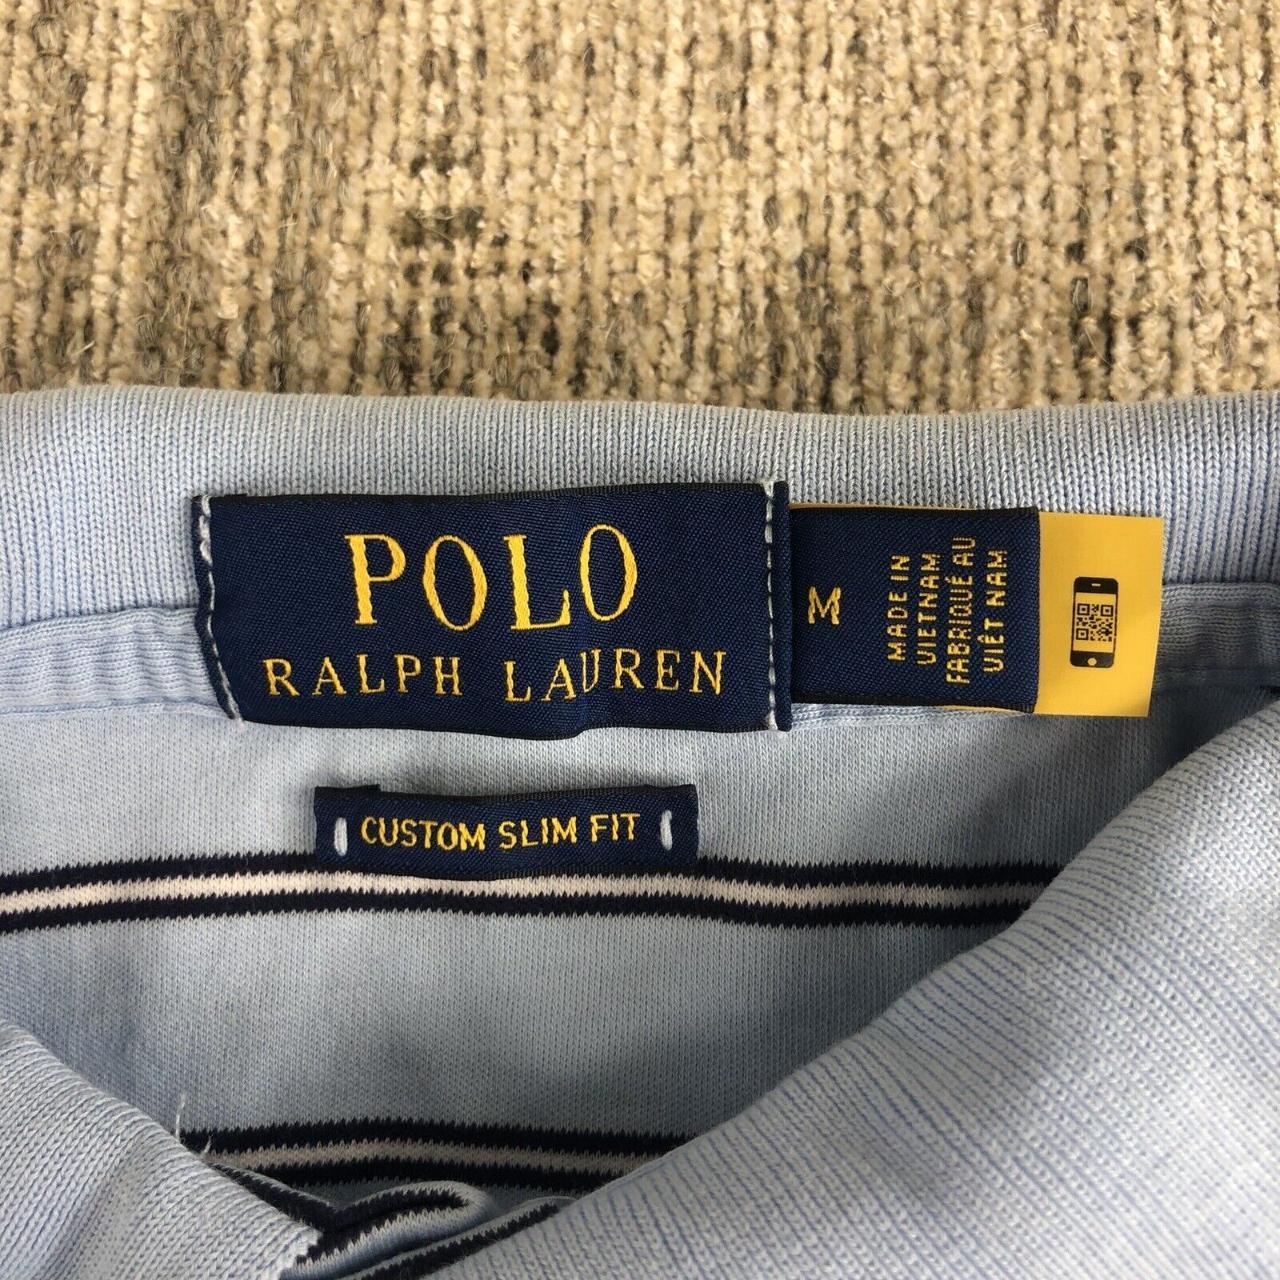 Ralph Lauren Polo Shirt Adult Medium Blue Brown Pony... - Depop